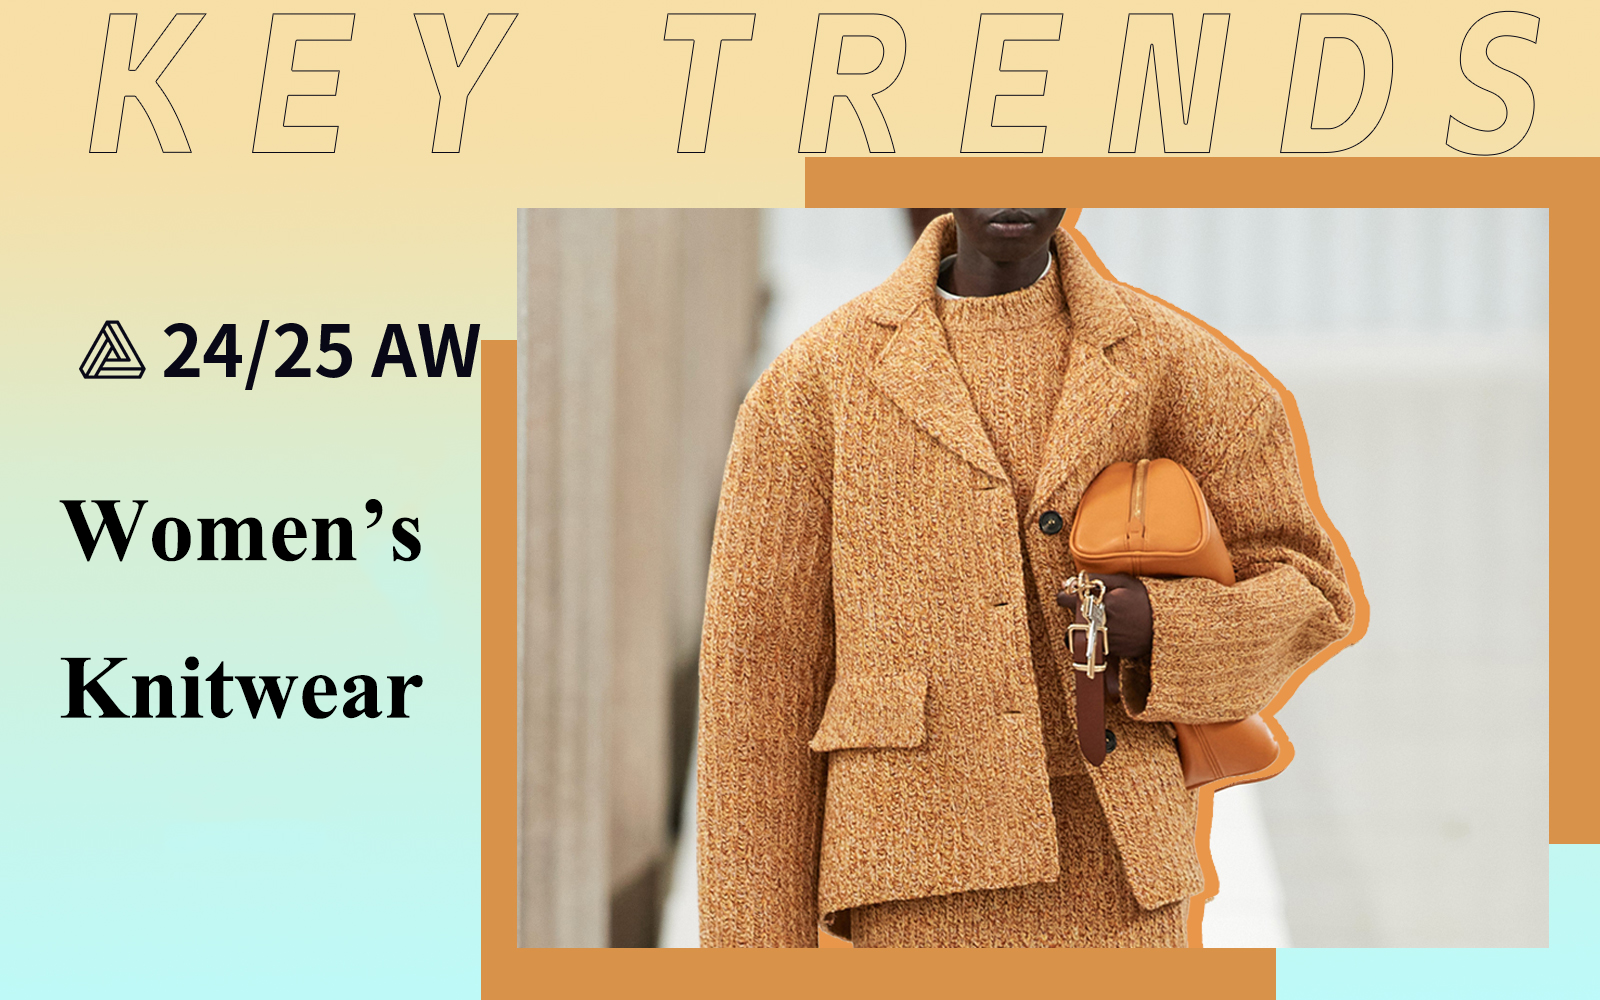 A/W 24/25 Women's Knitwear Key Trends